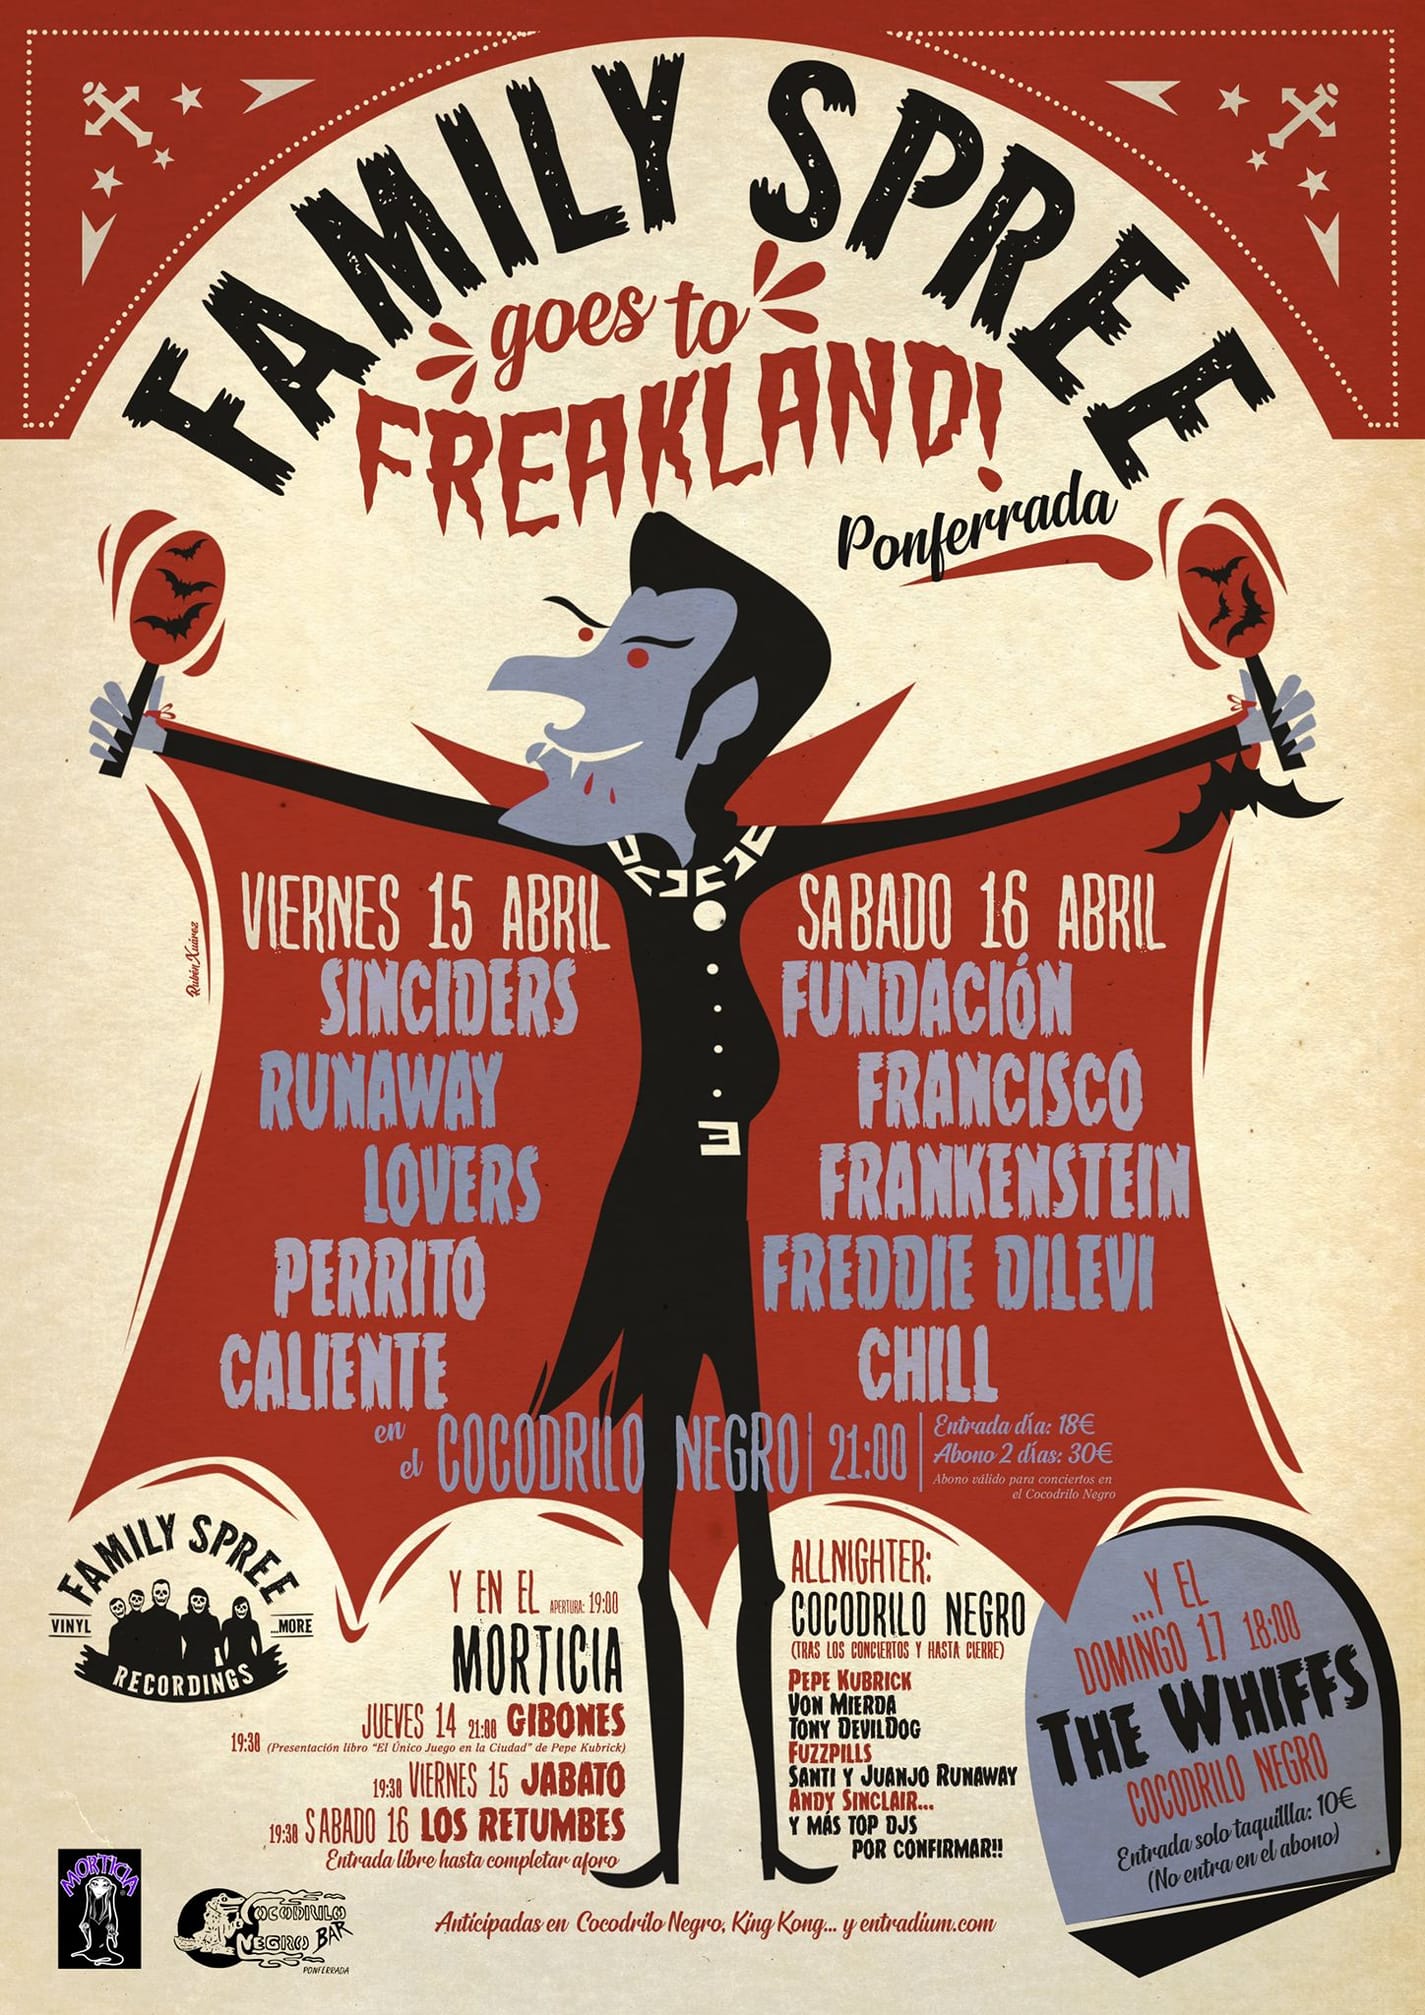 Freakland Ponferrada 2022, Los organizadores del festival anuncian su regreso durante la Semana Santa 2